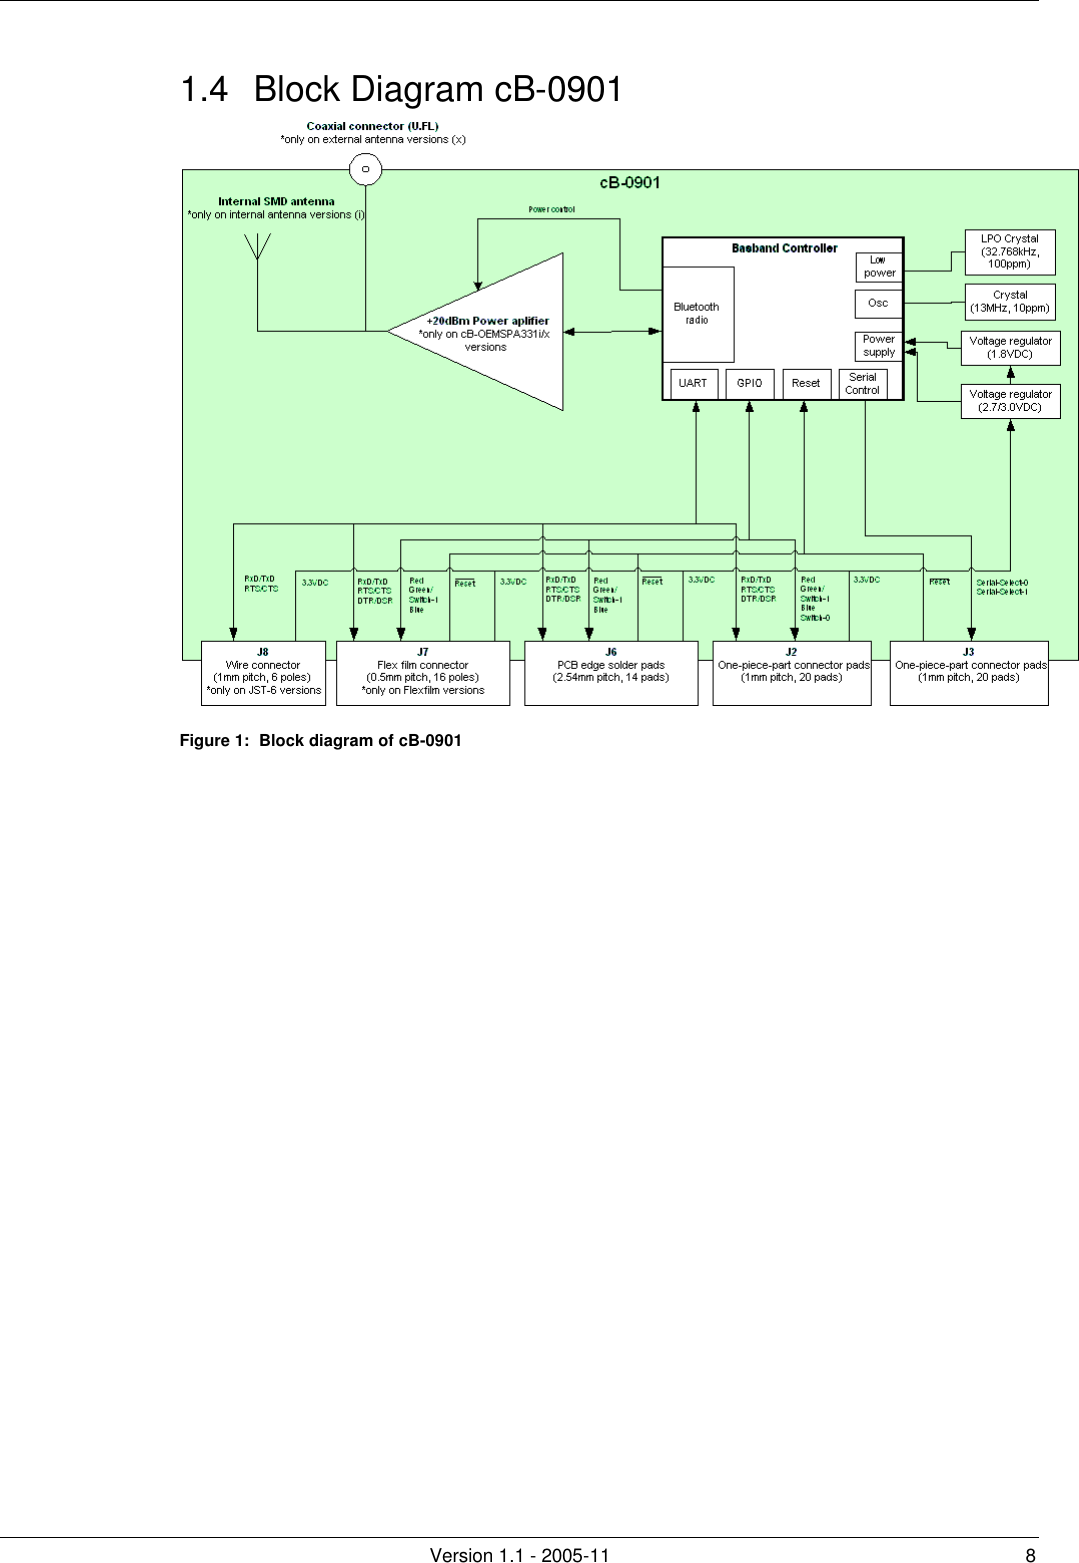         Version 1.1 - 2005-11 8 1.4 Block Diagram cB-0901  Figure 1:  Block diagram of cB-0901   